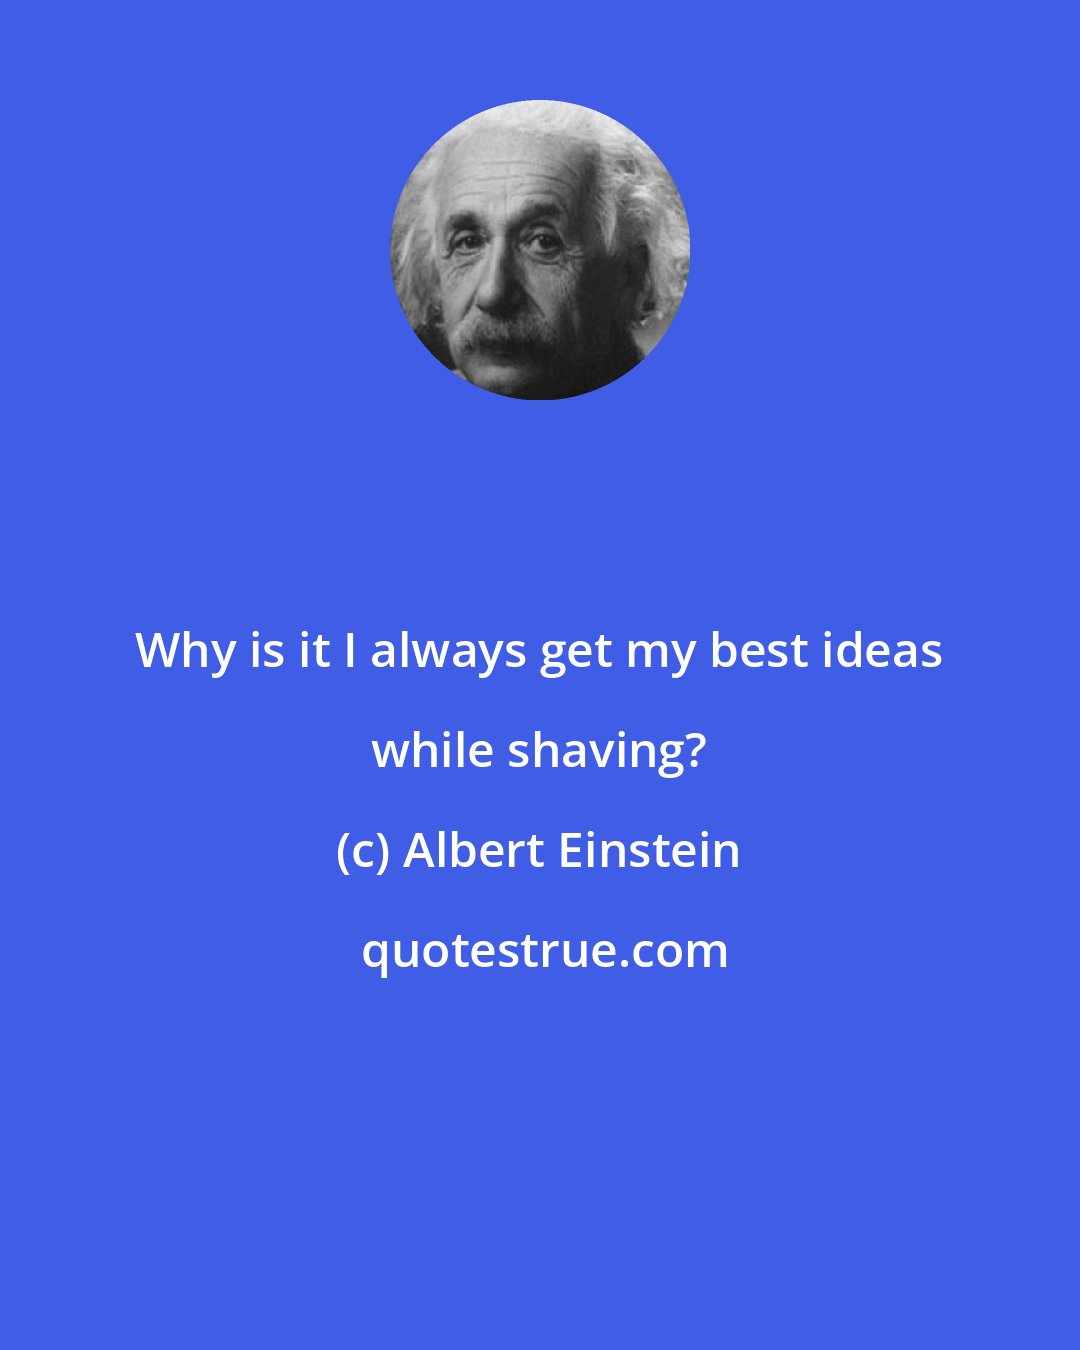 Albert Einstein: Why is it I always get my best ideas while shaving?